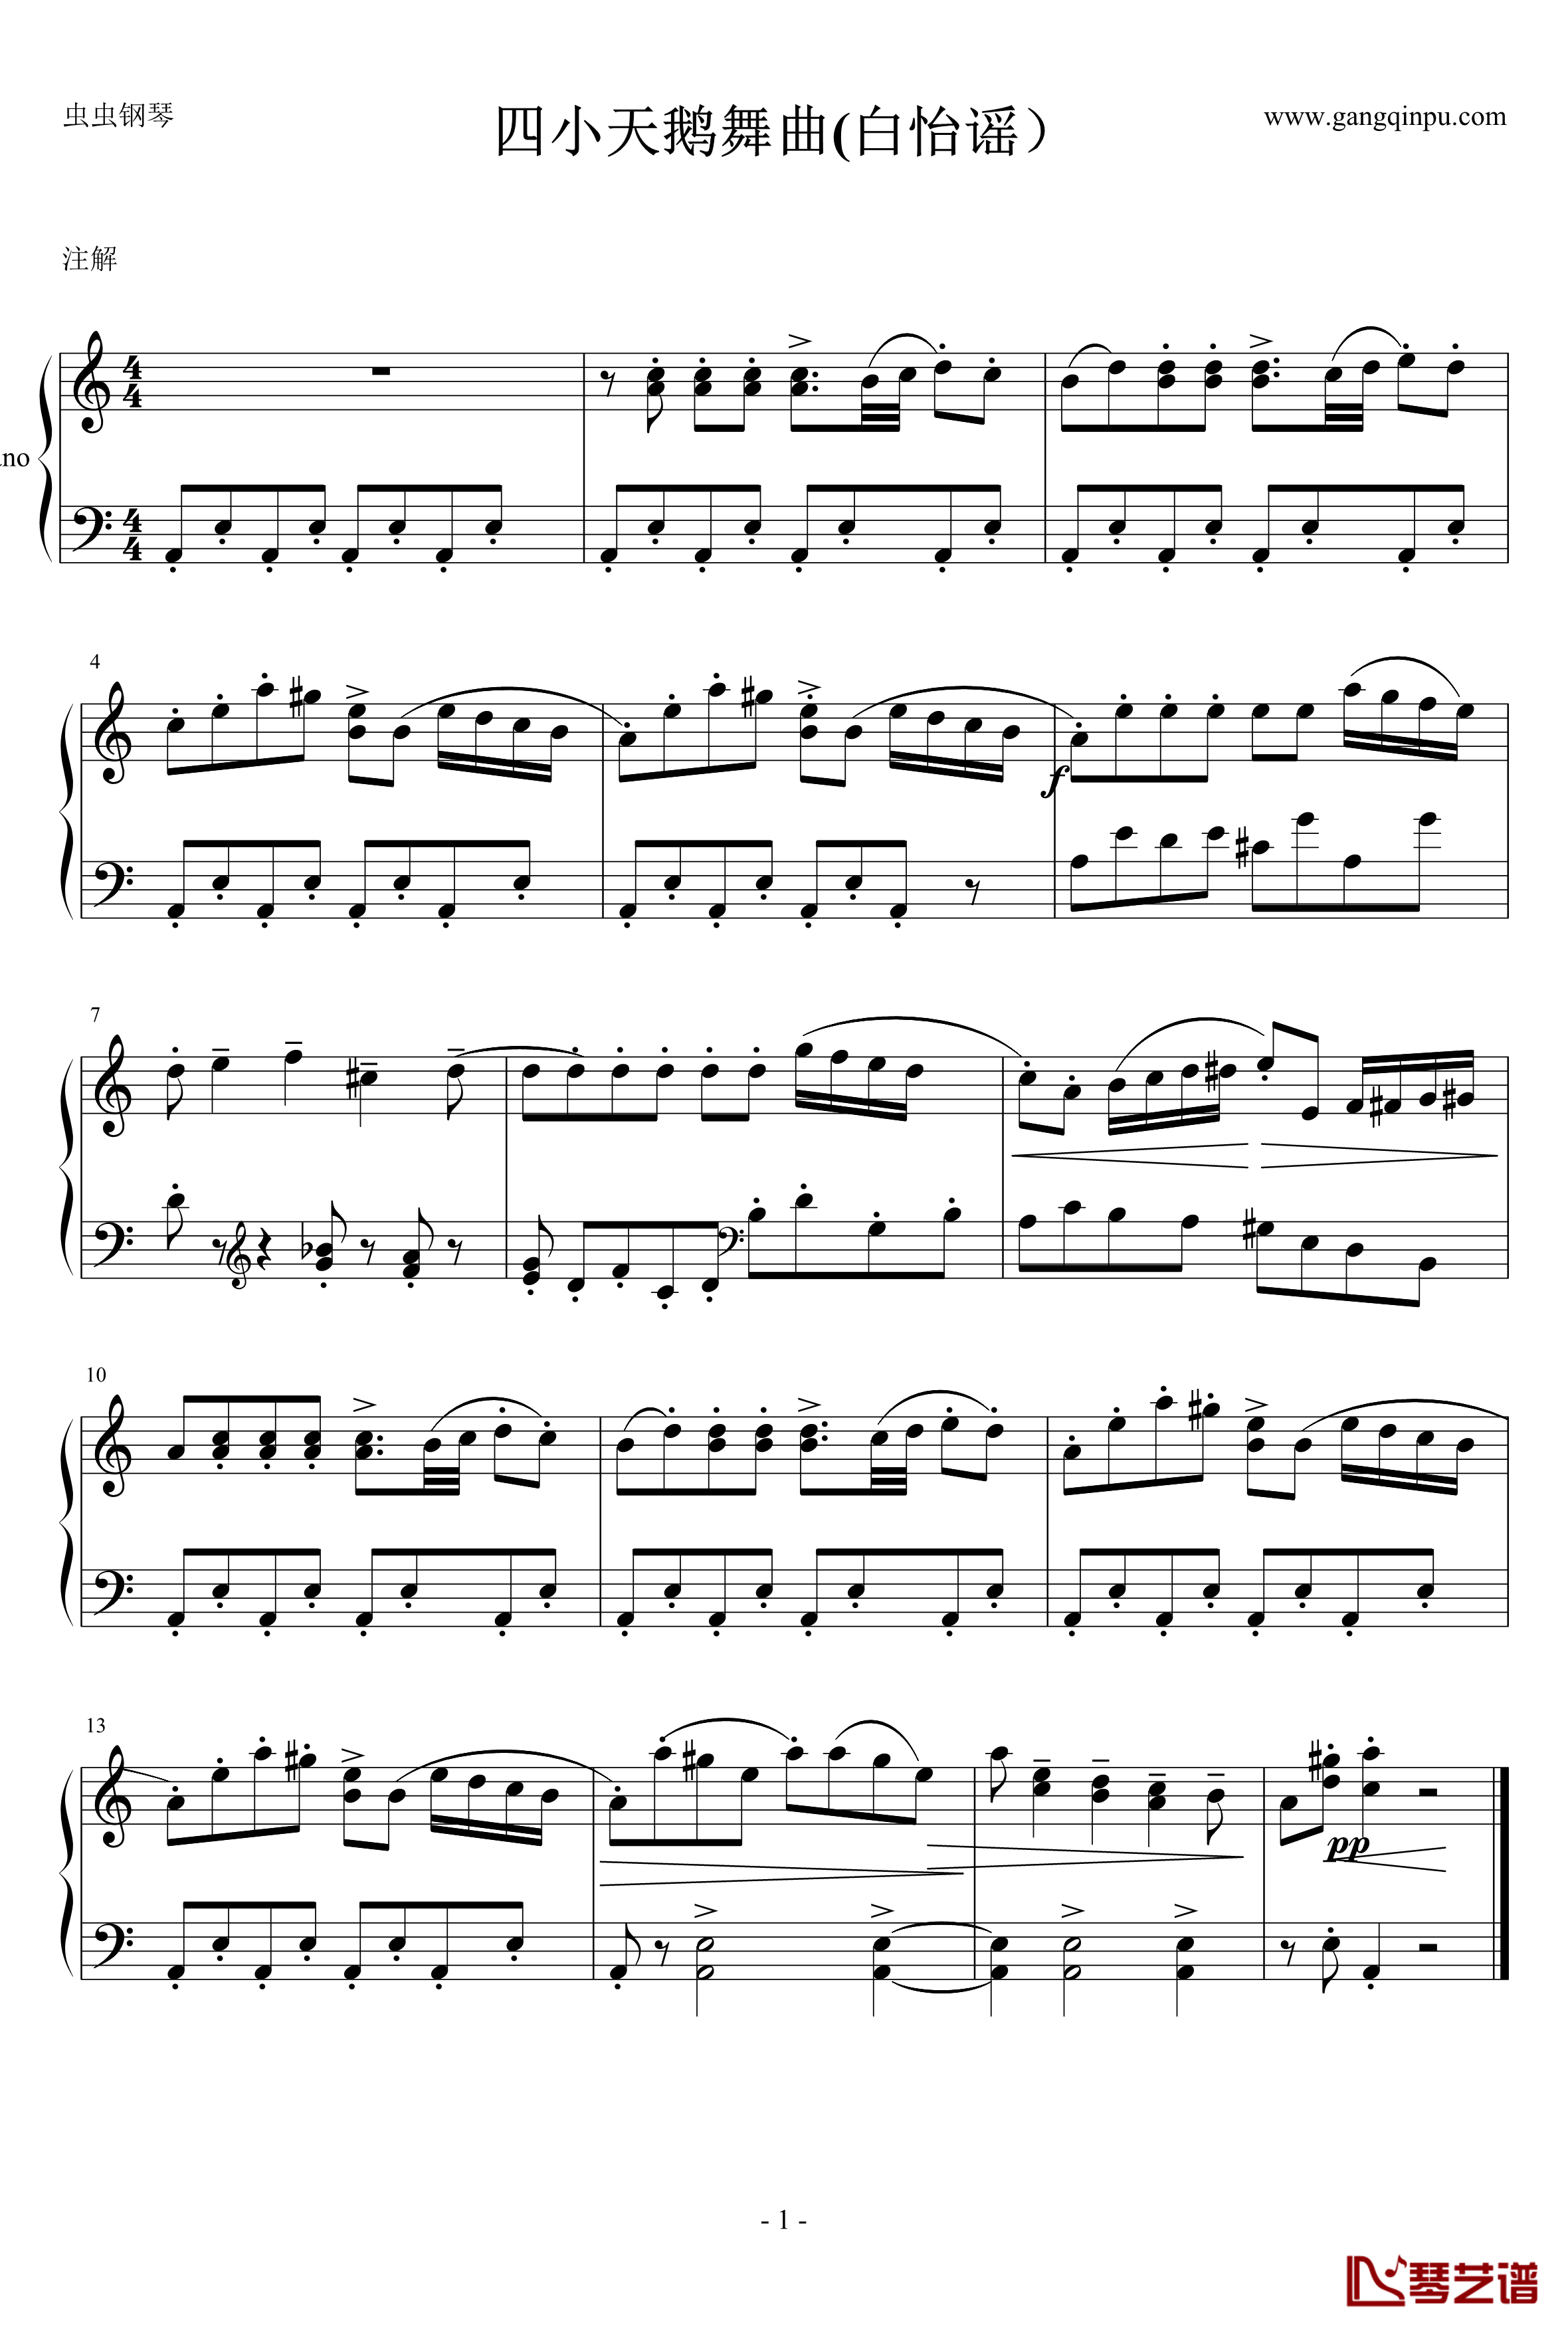 四小天鹅舞曲钢琴谱-世界名曲